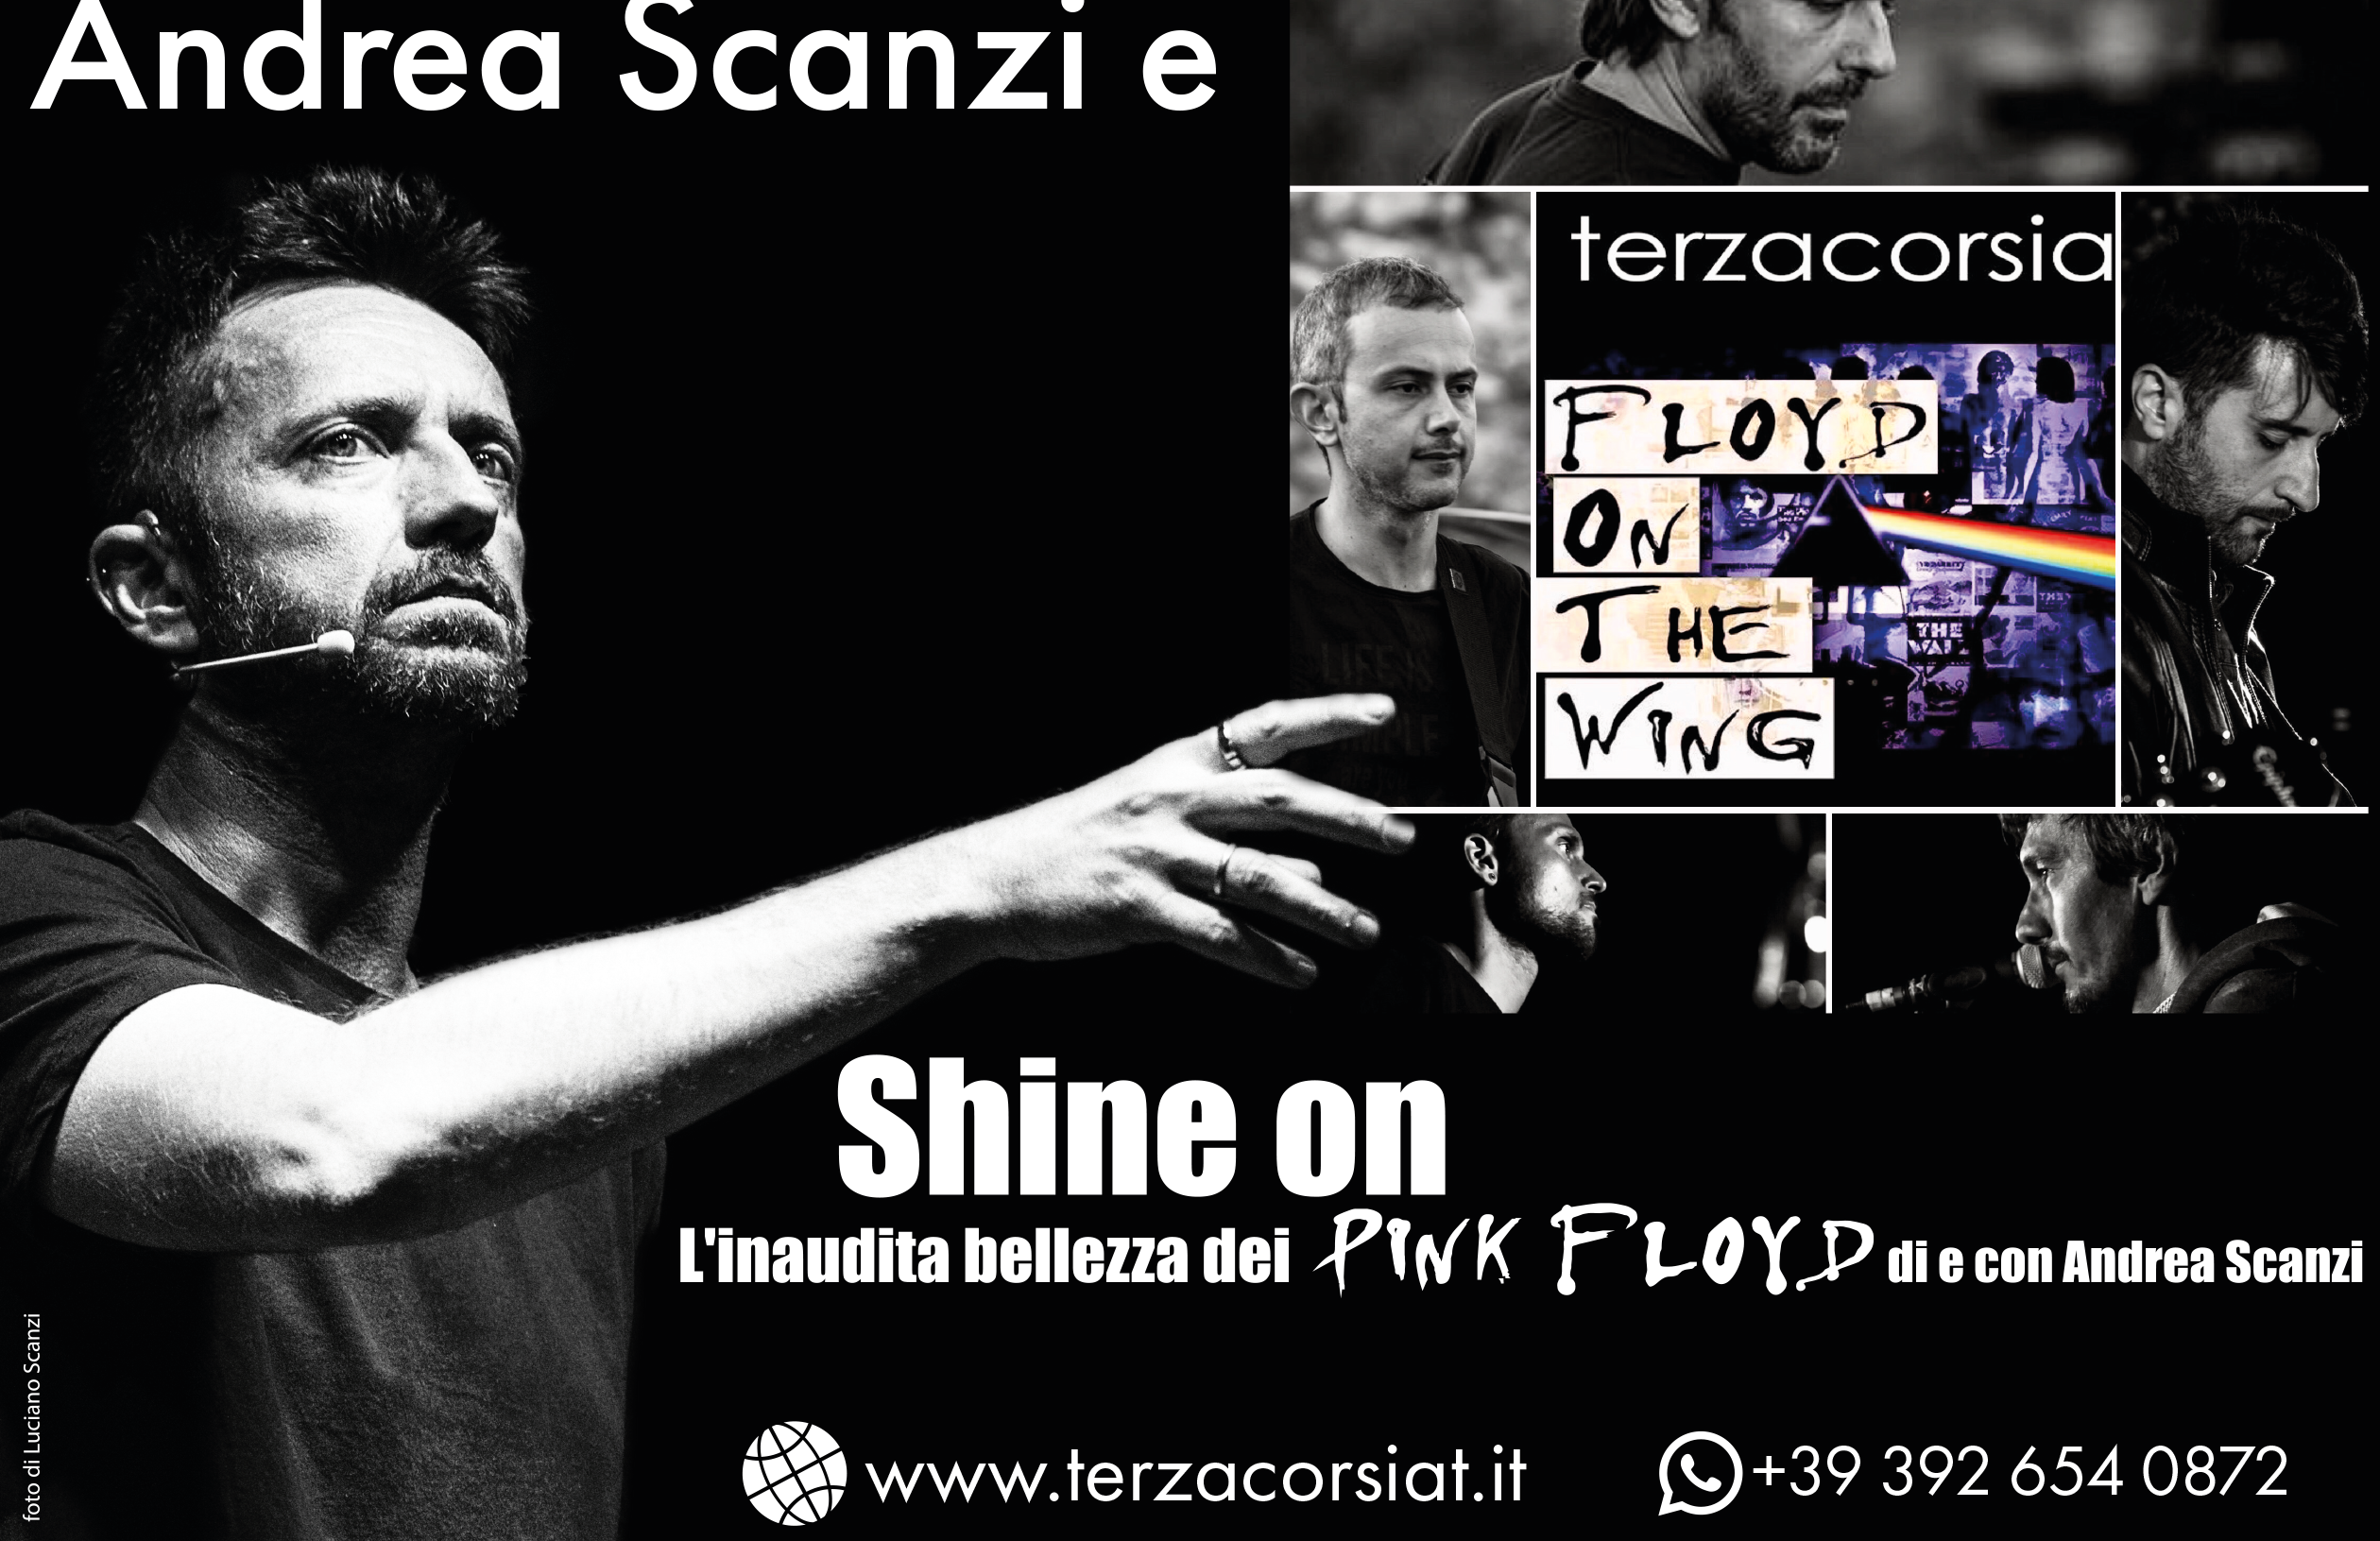 Con Andrea Scanzi e Floyd On The Wing Un concerto-spettacolo sui Pink Floyd: è questo “Shine on”.